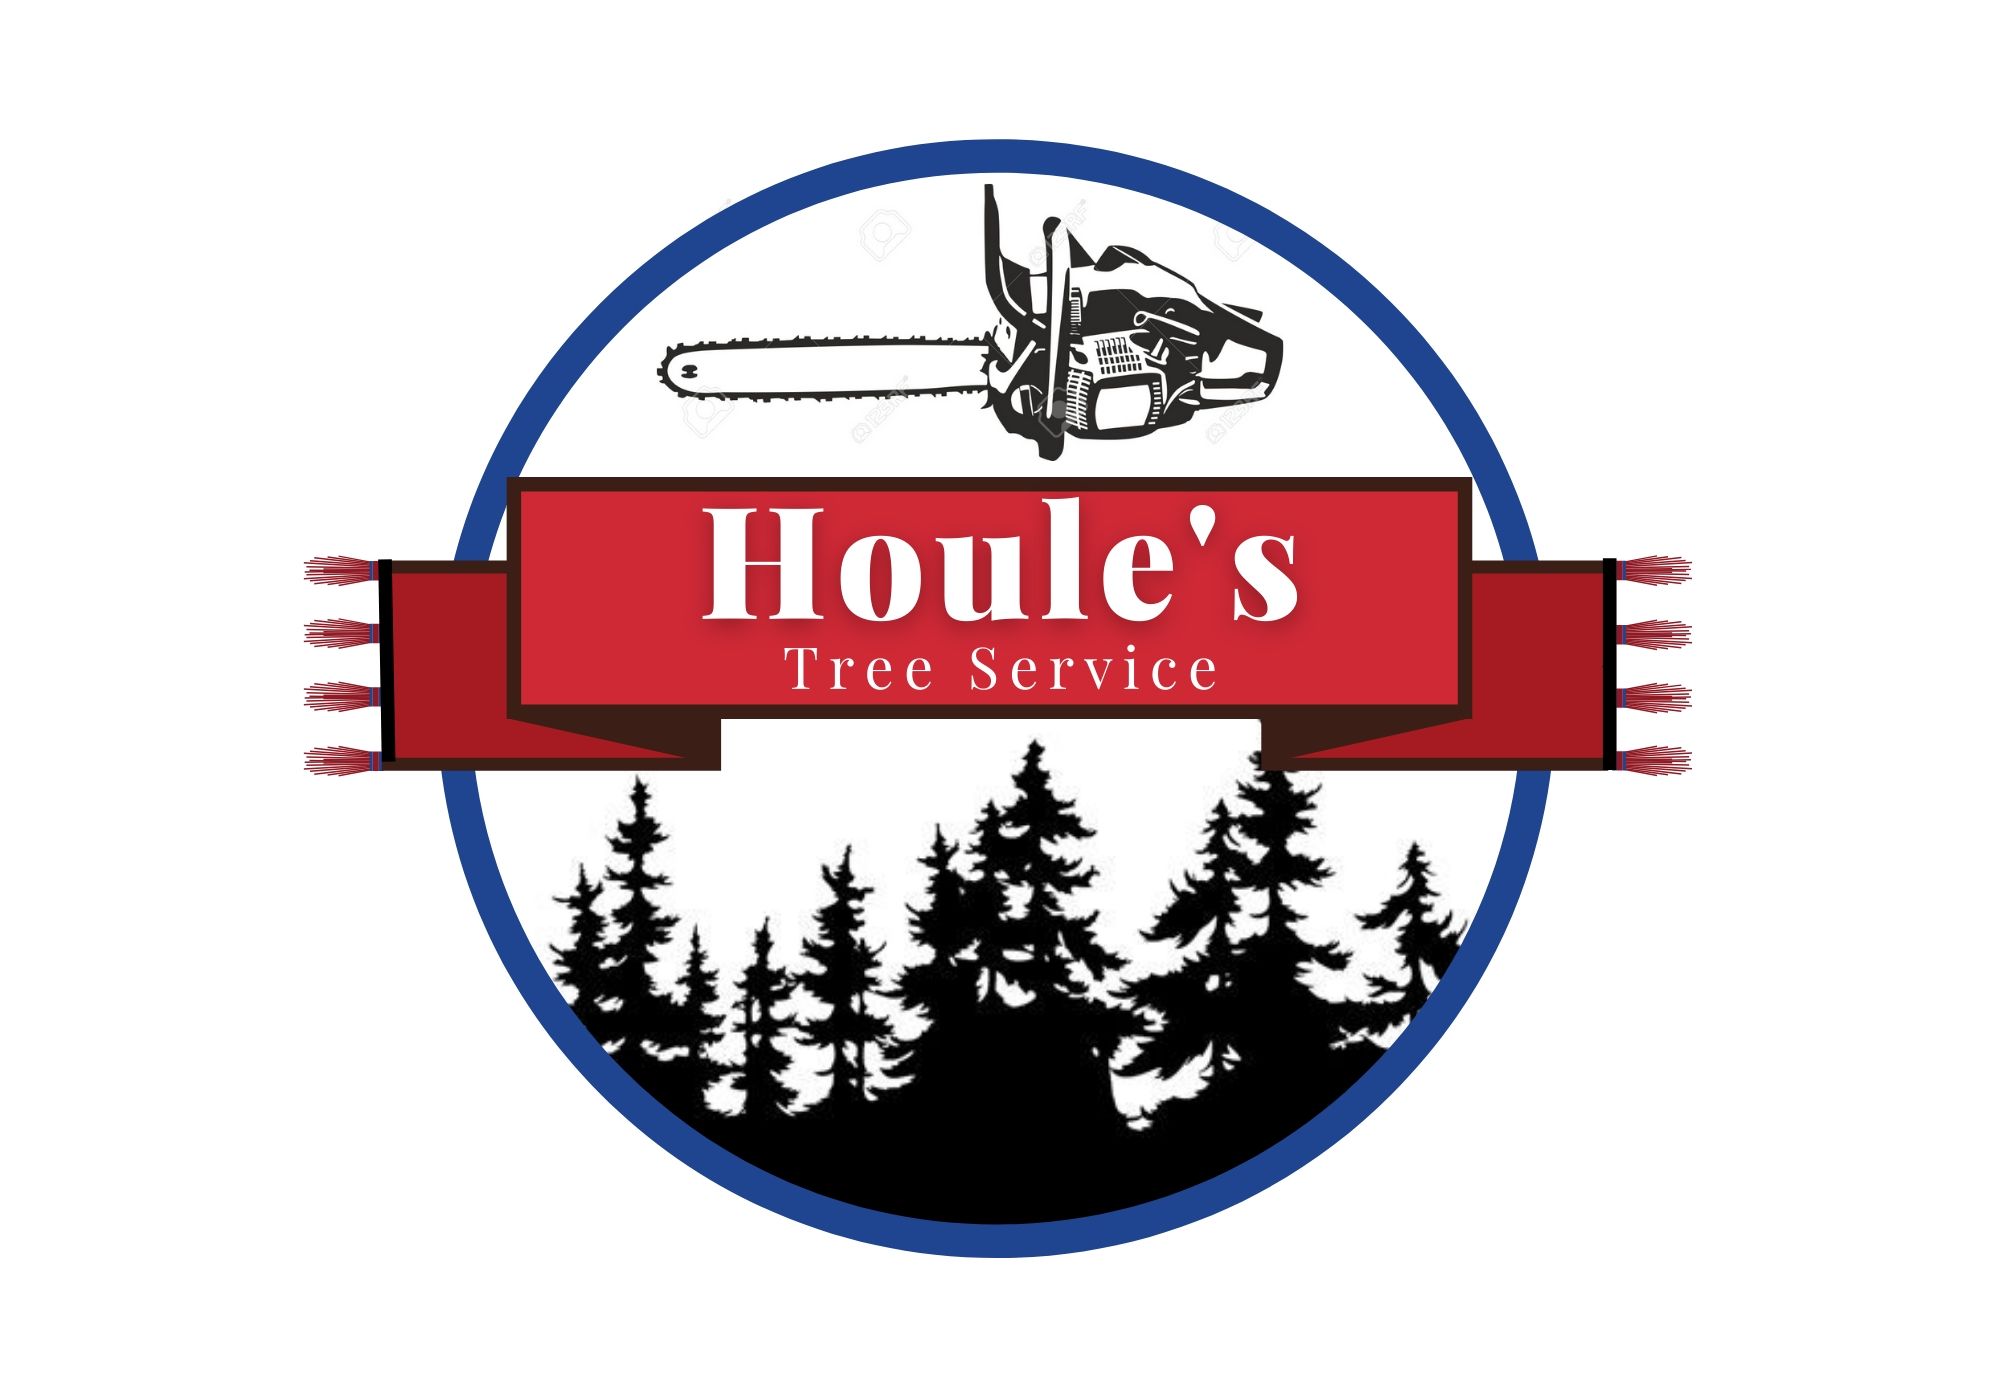 Houle's Tree Service